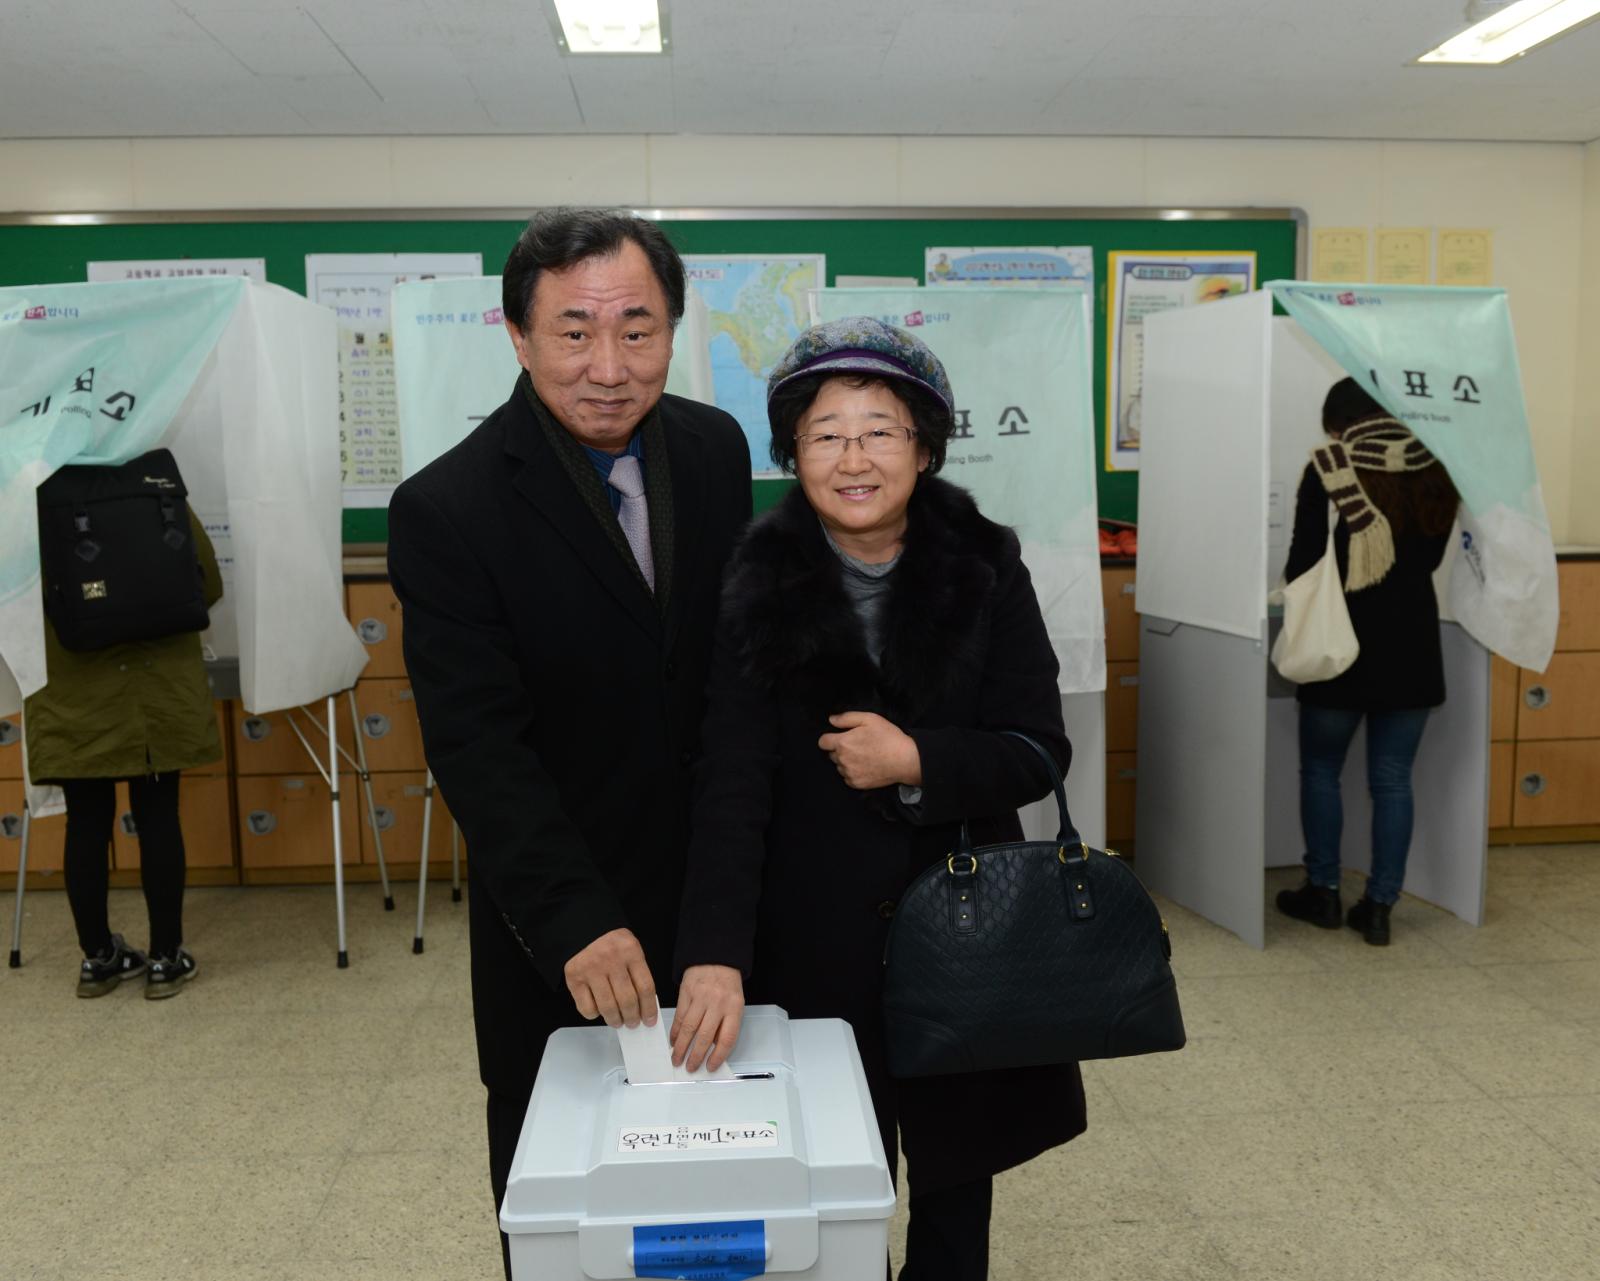 제18대대통령선거에 투표하는 고남석구청장내외의 1번째 이미지